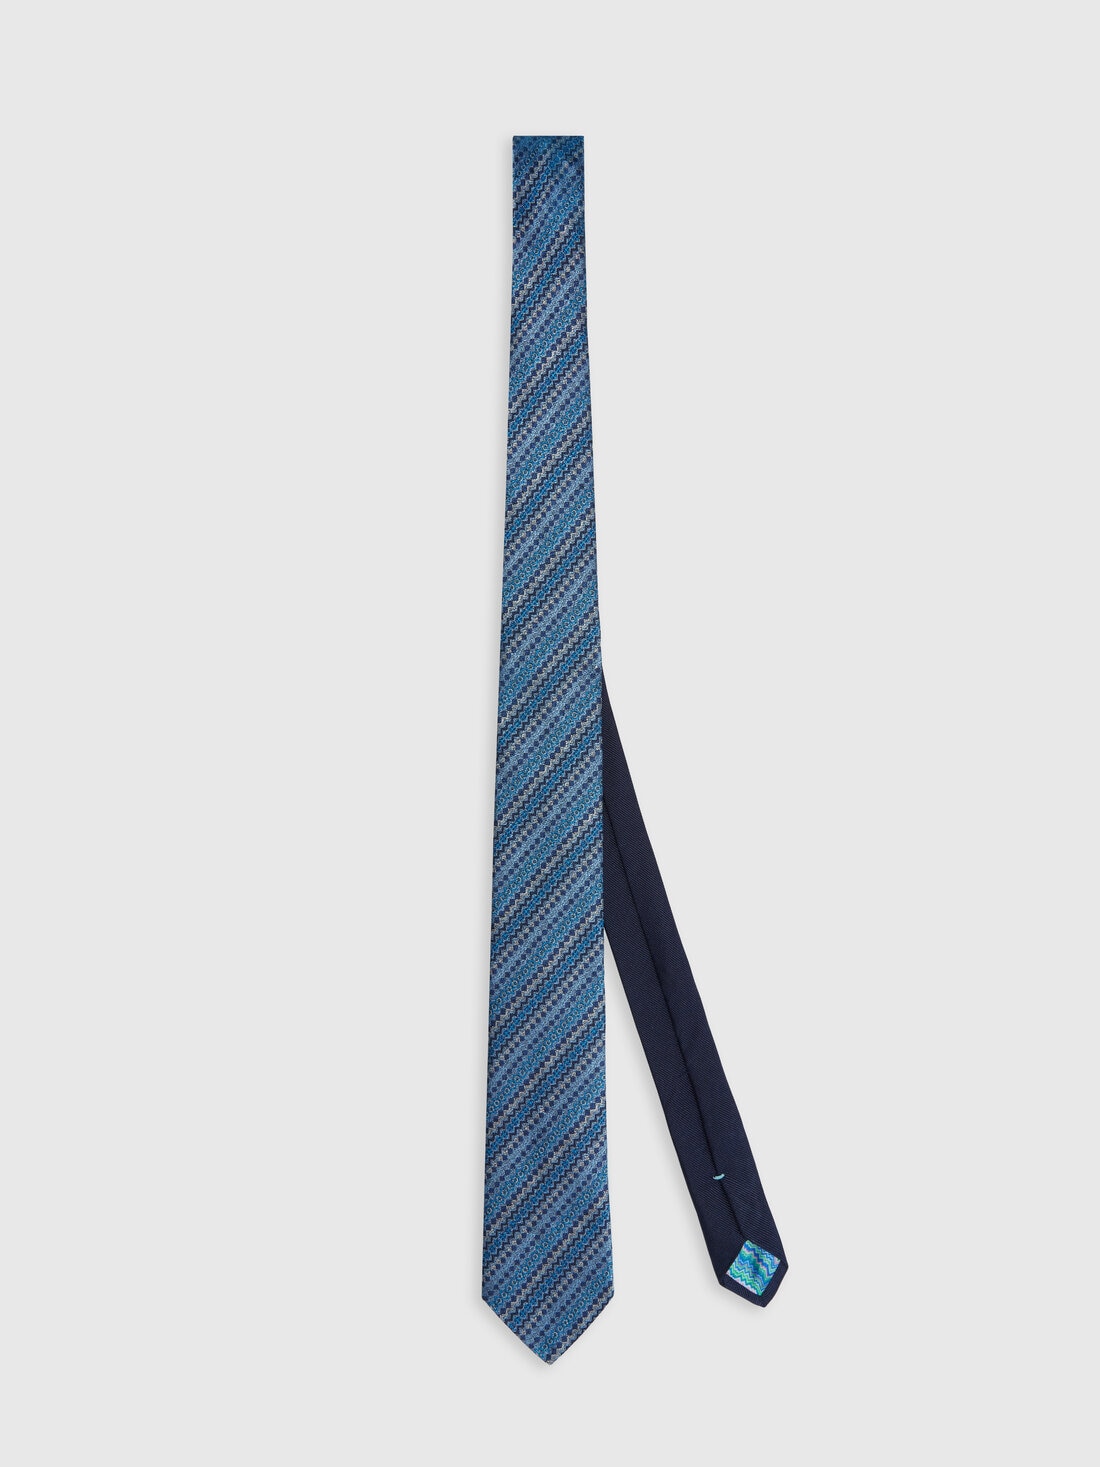 Cravatta in seta multilavorata , Multicolore  - 8053147141893 - 0